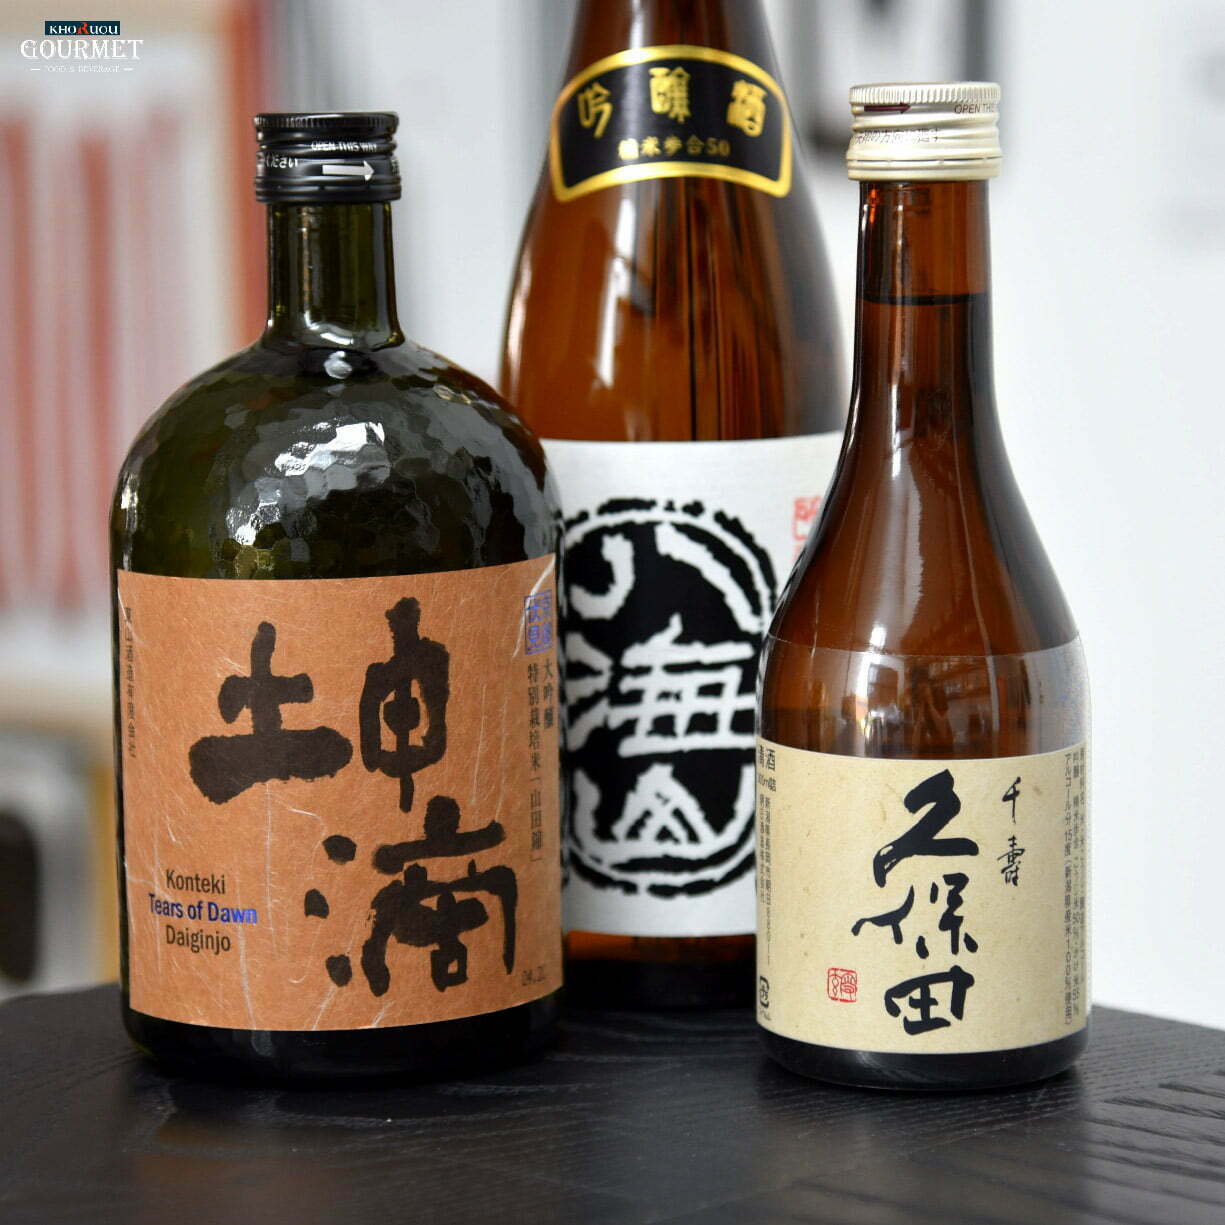 Cách chọn rượu Nhật ngon và nổi tiếng theo nguyên liệu Hojozo